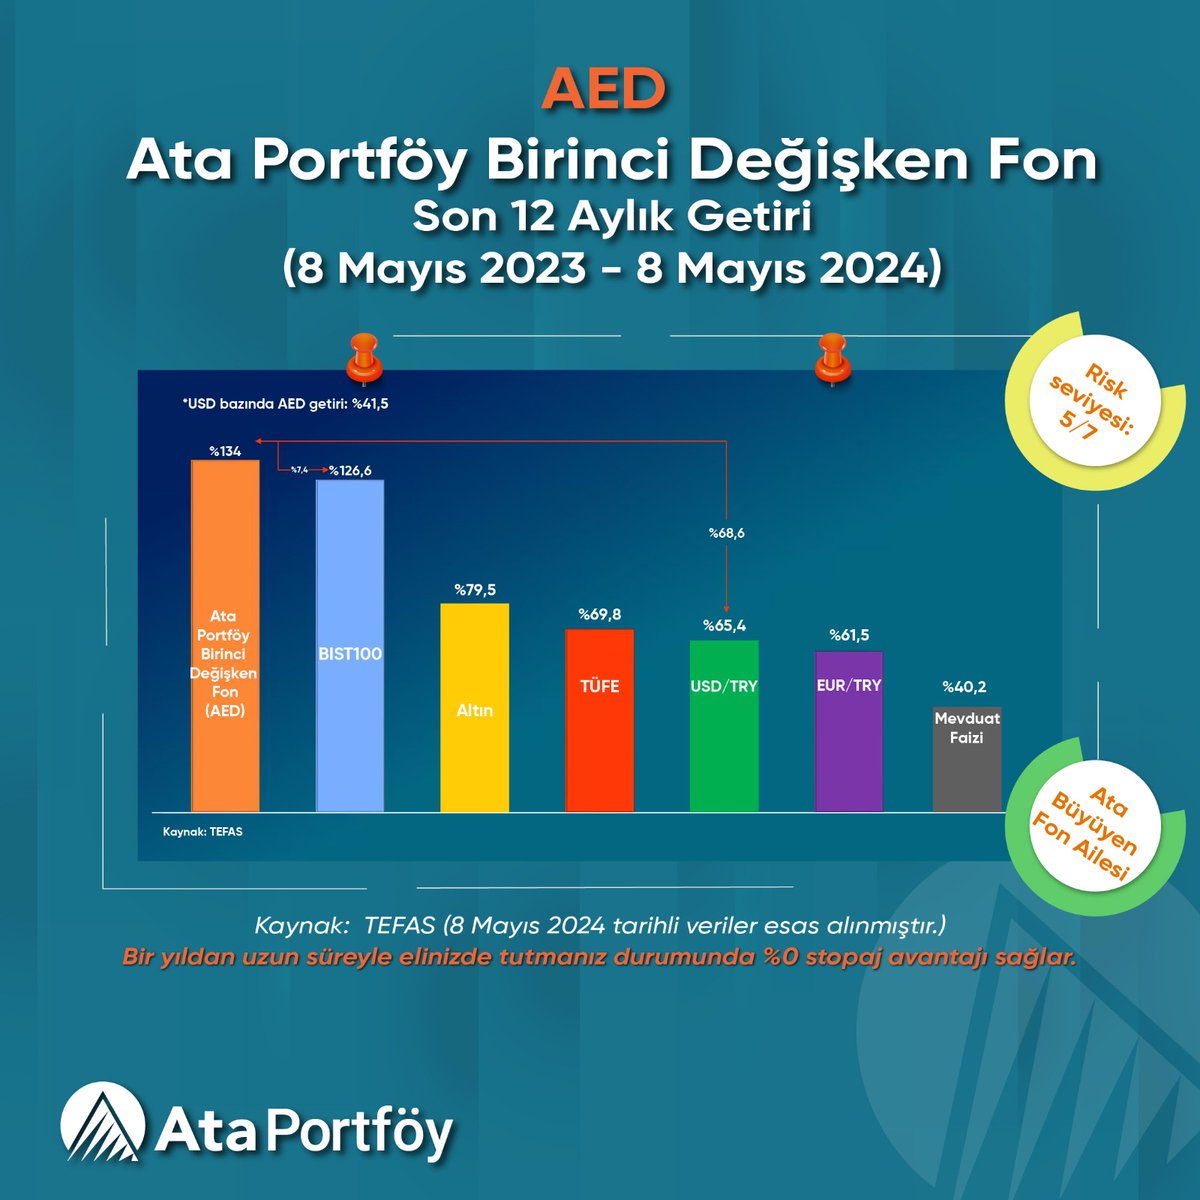 🎯 Ata Büyüyen Fon Ailesi'nden, Ata Portföy Birinci Değişken Fon (AED) son 12 ayda %134* getiri sağladı. (Dolar bazında: %41,5) Kaynak: TEFAS 📌 Fon, bir yıl elde tutulduğunda sıfır stopaj avantajı sağlamaktadır. Detaylı bilgi için:➡ ataportfoy.com.tr/FundDetails?fu… #AED #ATAPortföy